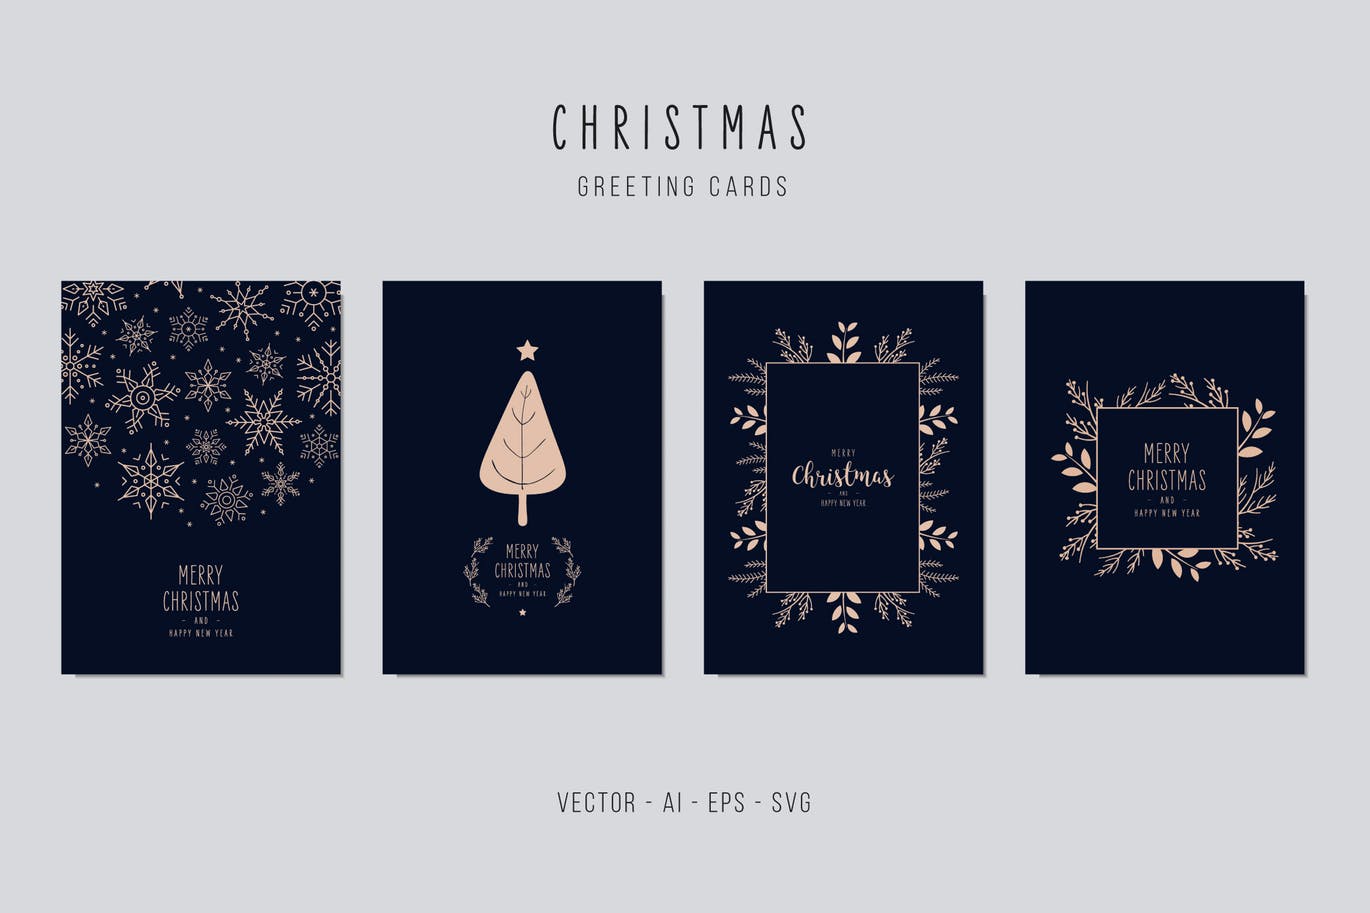 雪花&植物手绘图案圣诞节贺卡矢量设计模板集v1 Christmas Greeting Vector Card Set插图